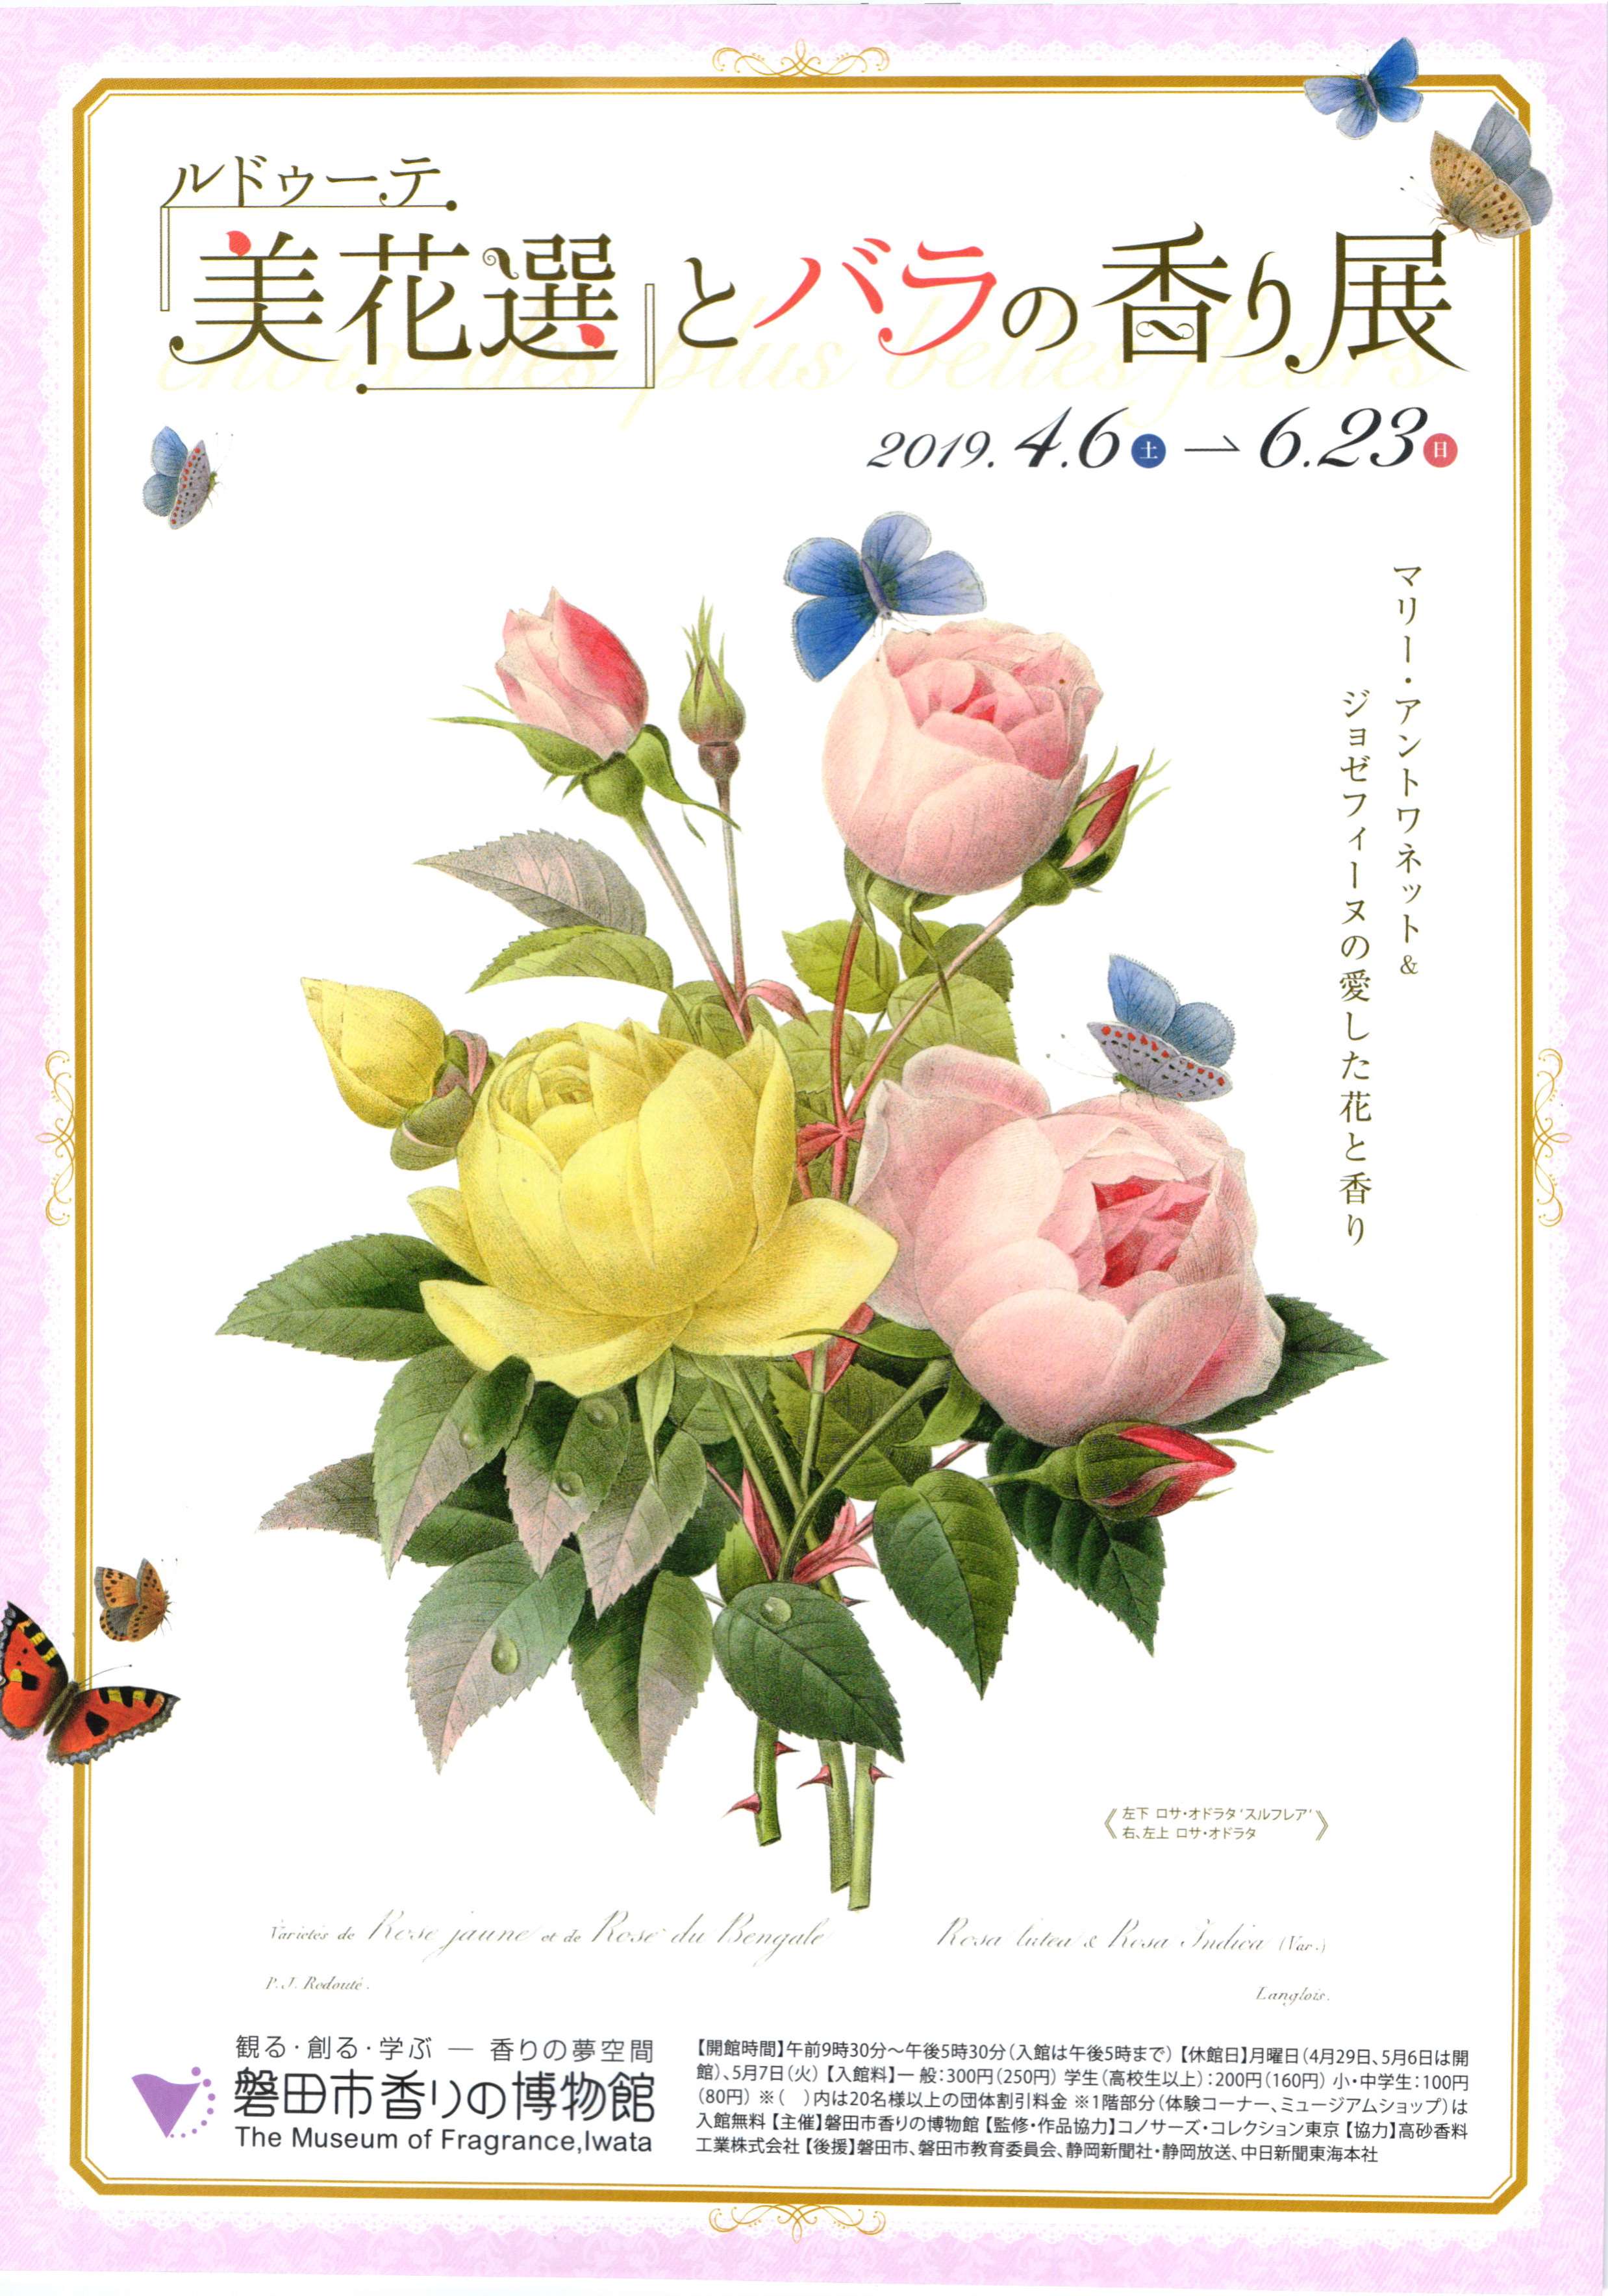  磐田市香りの博物館・企画展「おひな様と春の香り」